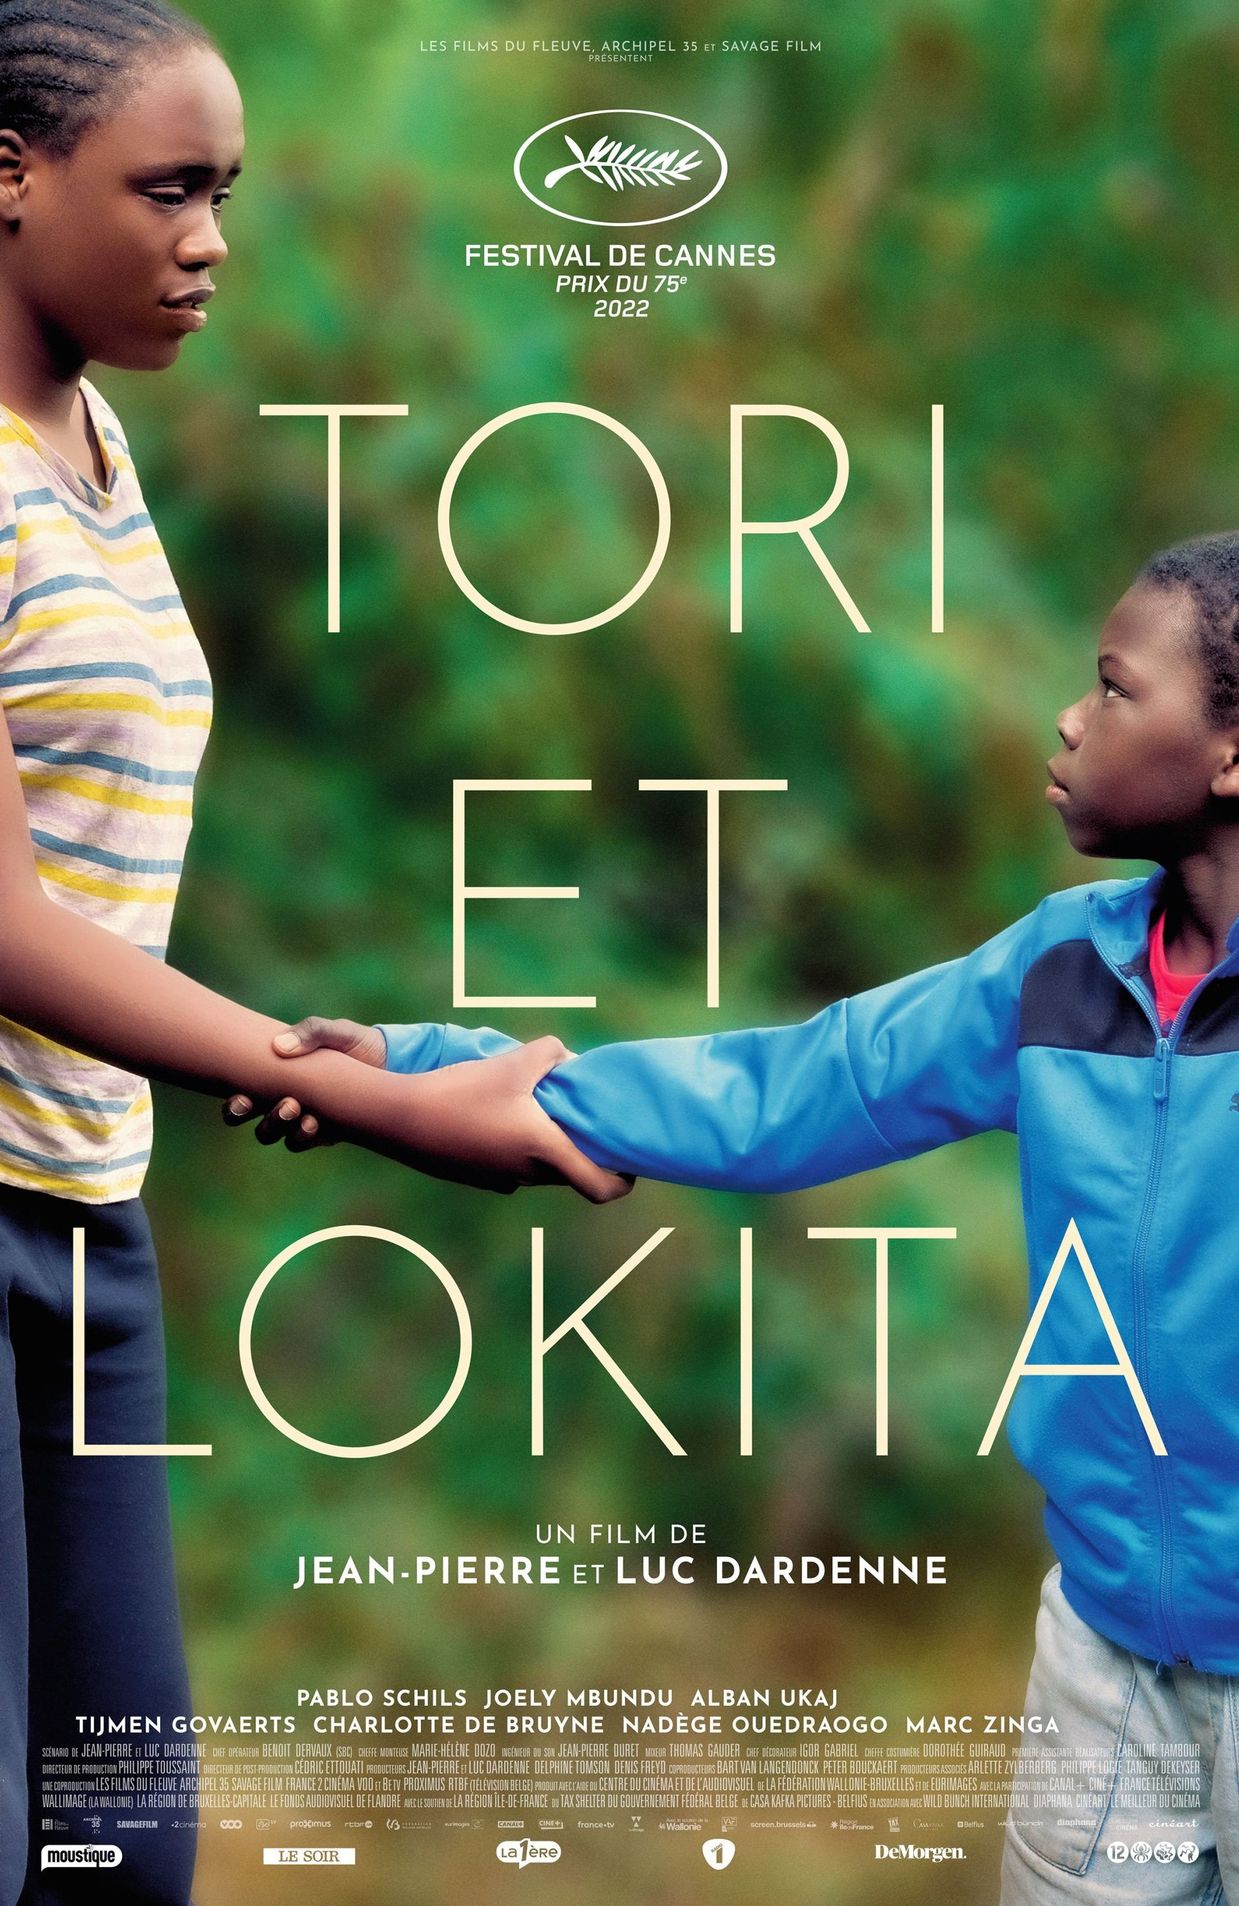 L'affiche de "Tori et Lokita"